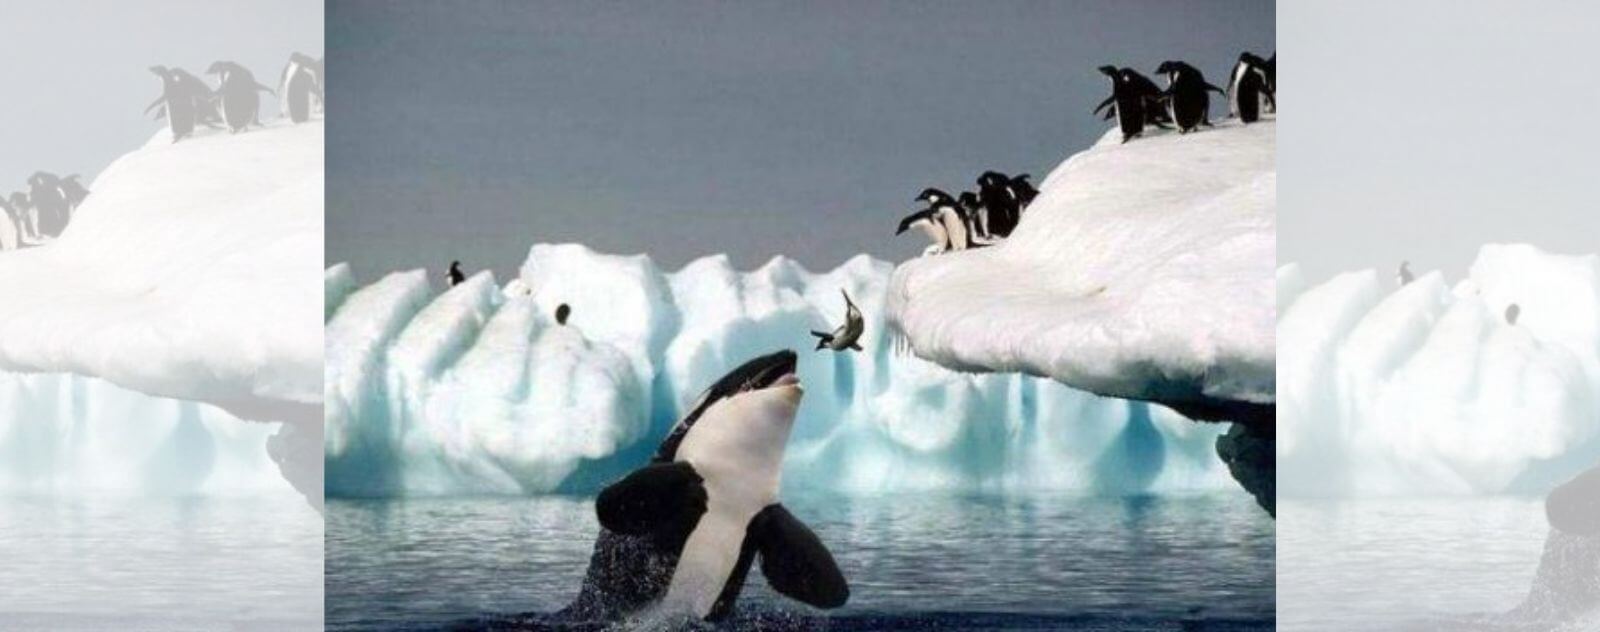 La orca caza y come pingüinos que saltan de un témpano de hielo en la Antártida